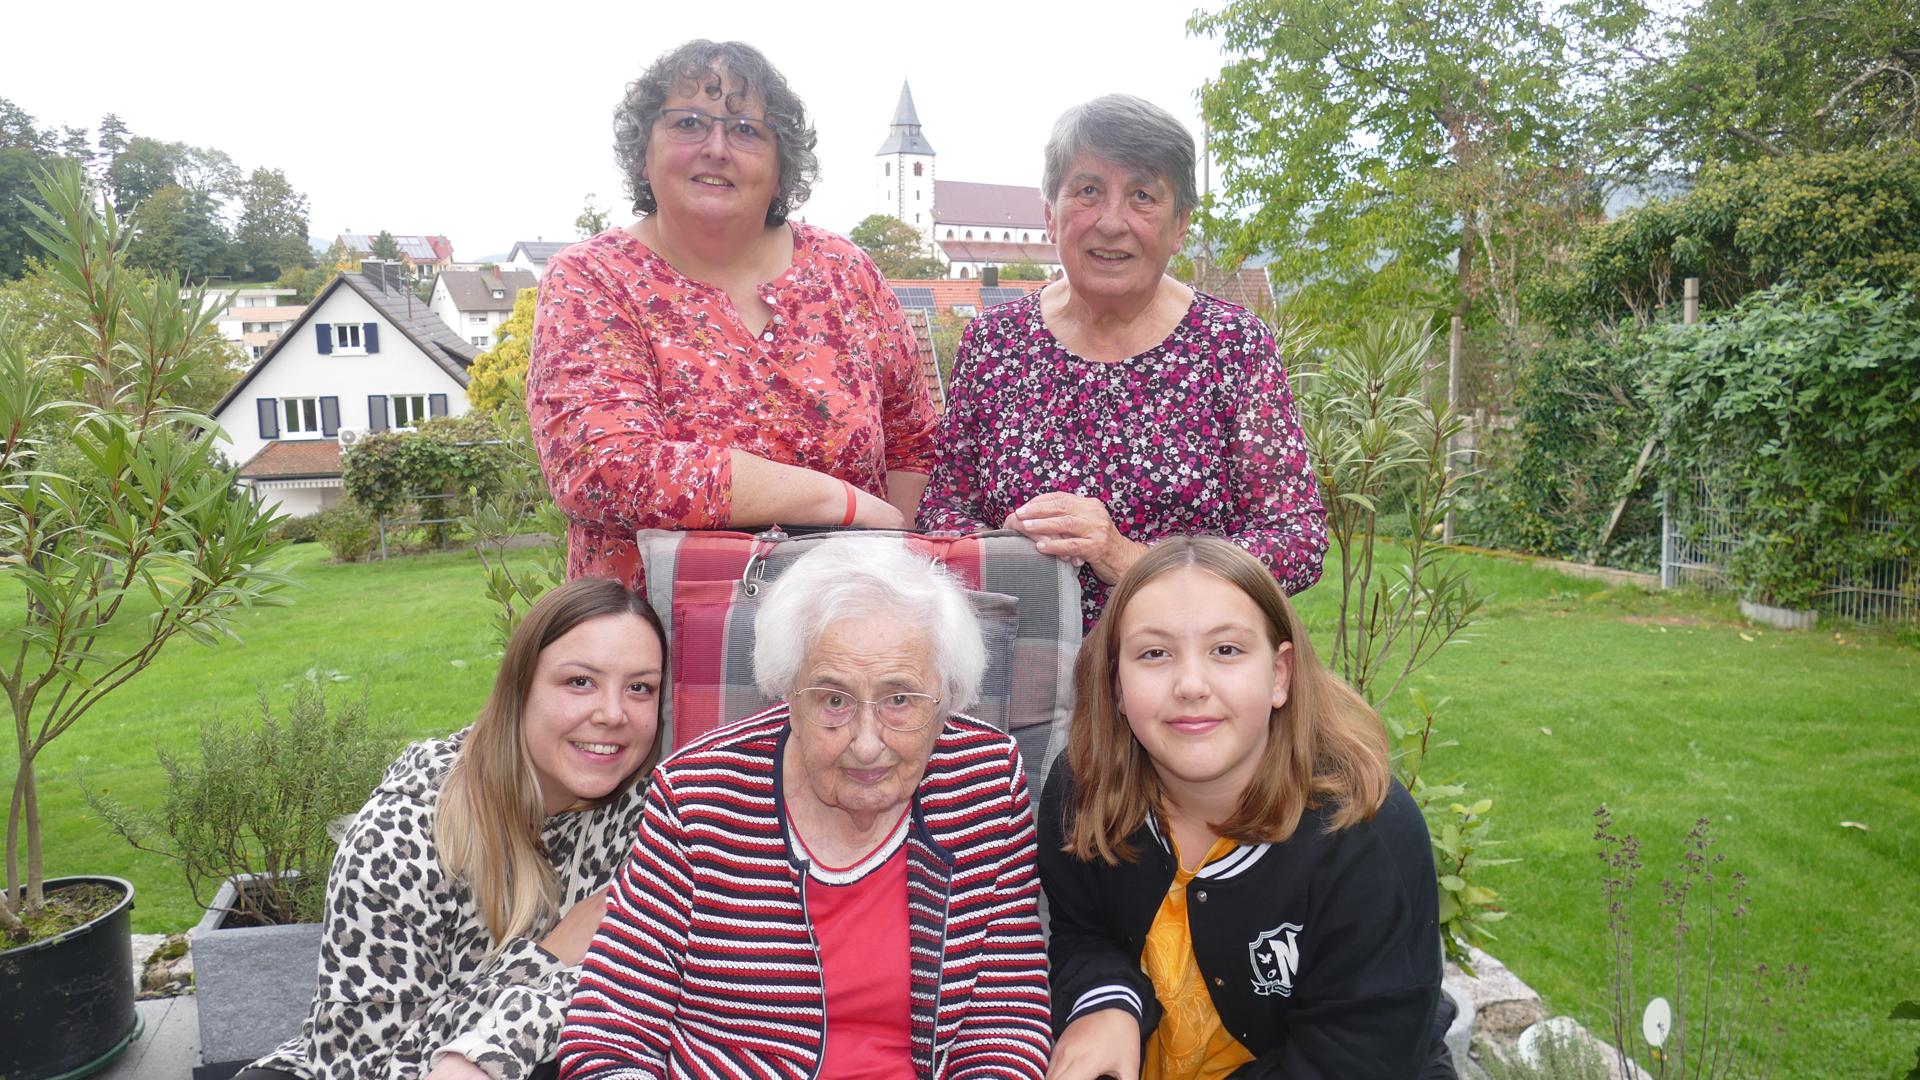 Enkelin Gaby, Tochter Gerda (beide hinten von links), Urenkelin Vanessa (vorne links) und Ururenkelin Lisa gratulieren Elenor Sprecher.